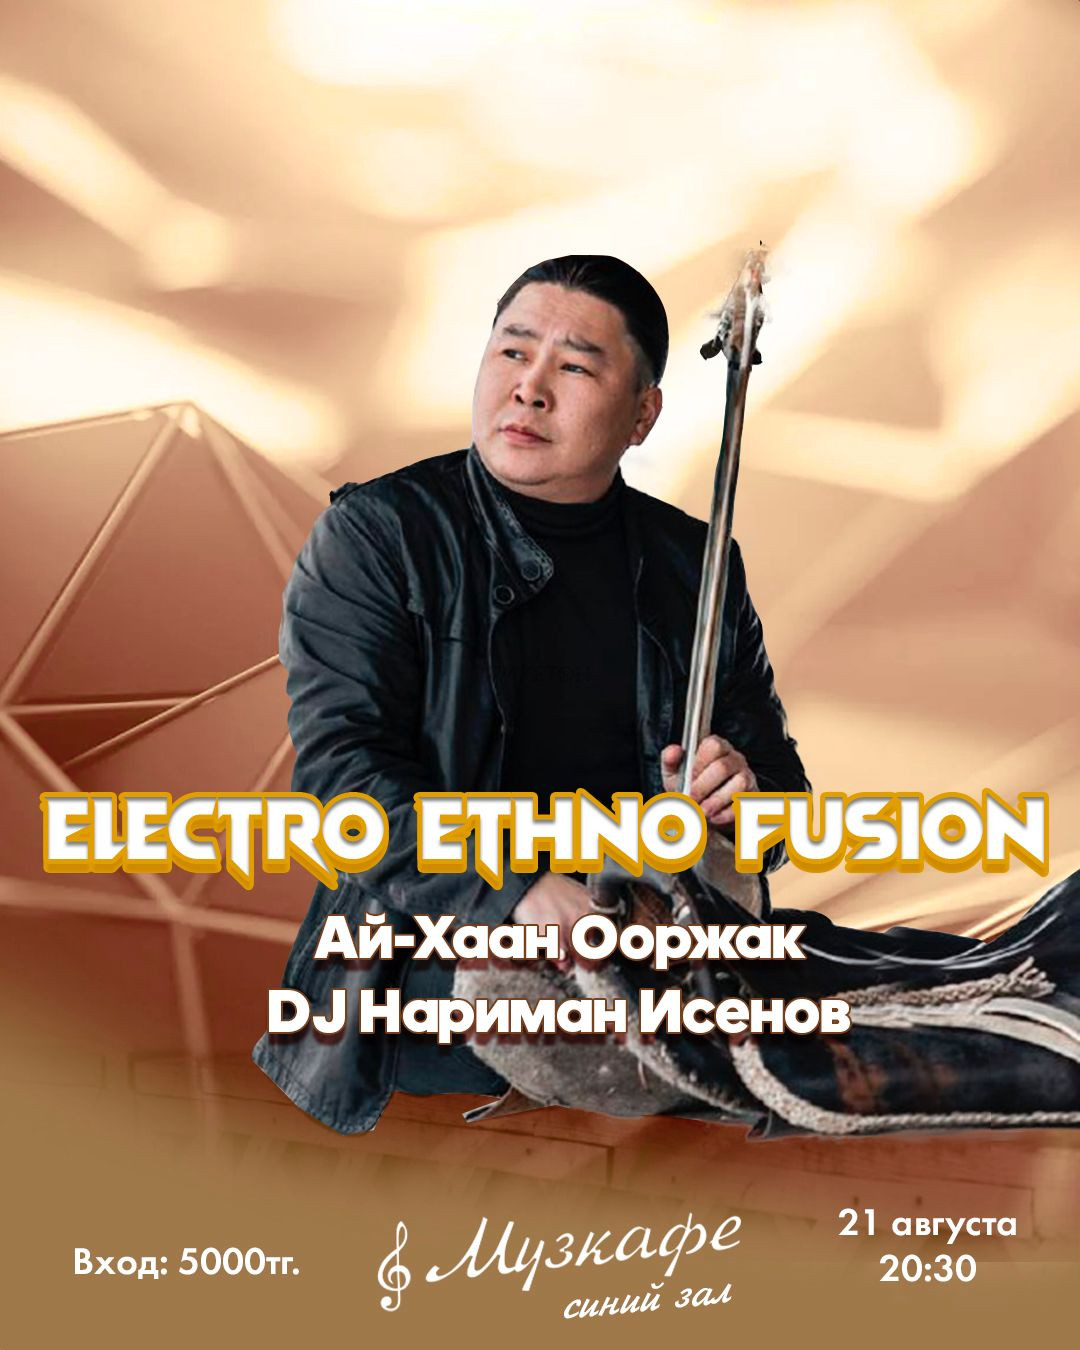 Electro Ethno Fusion